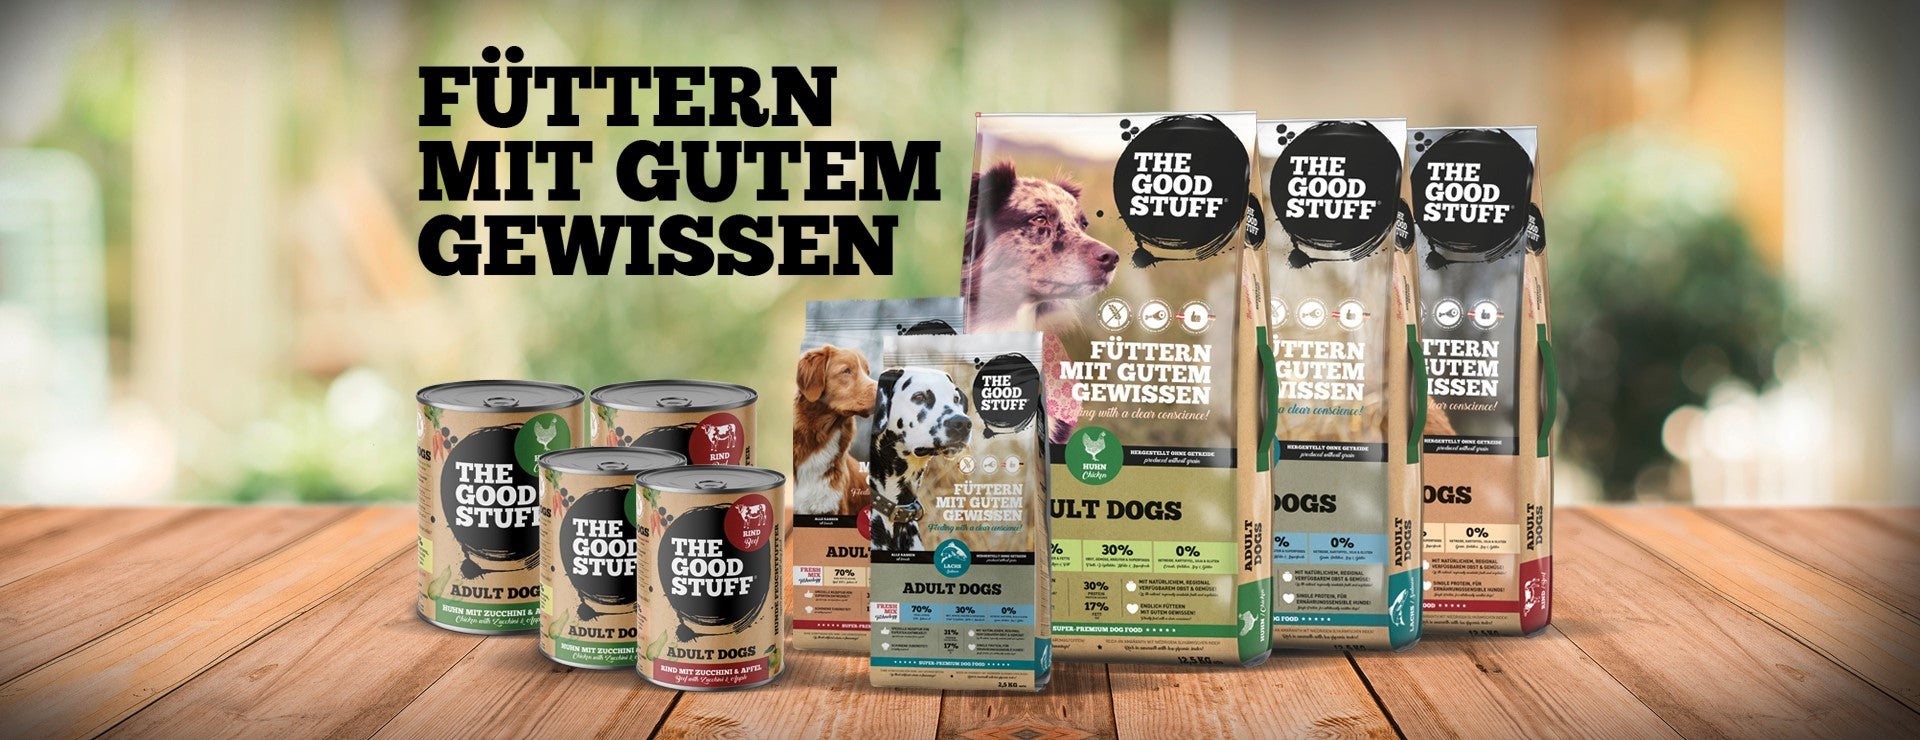 The Goodstuff Hundefutter, Dog Food